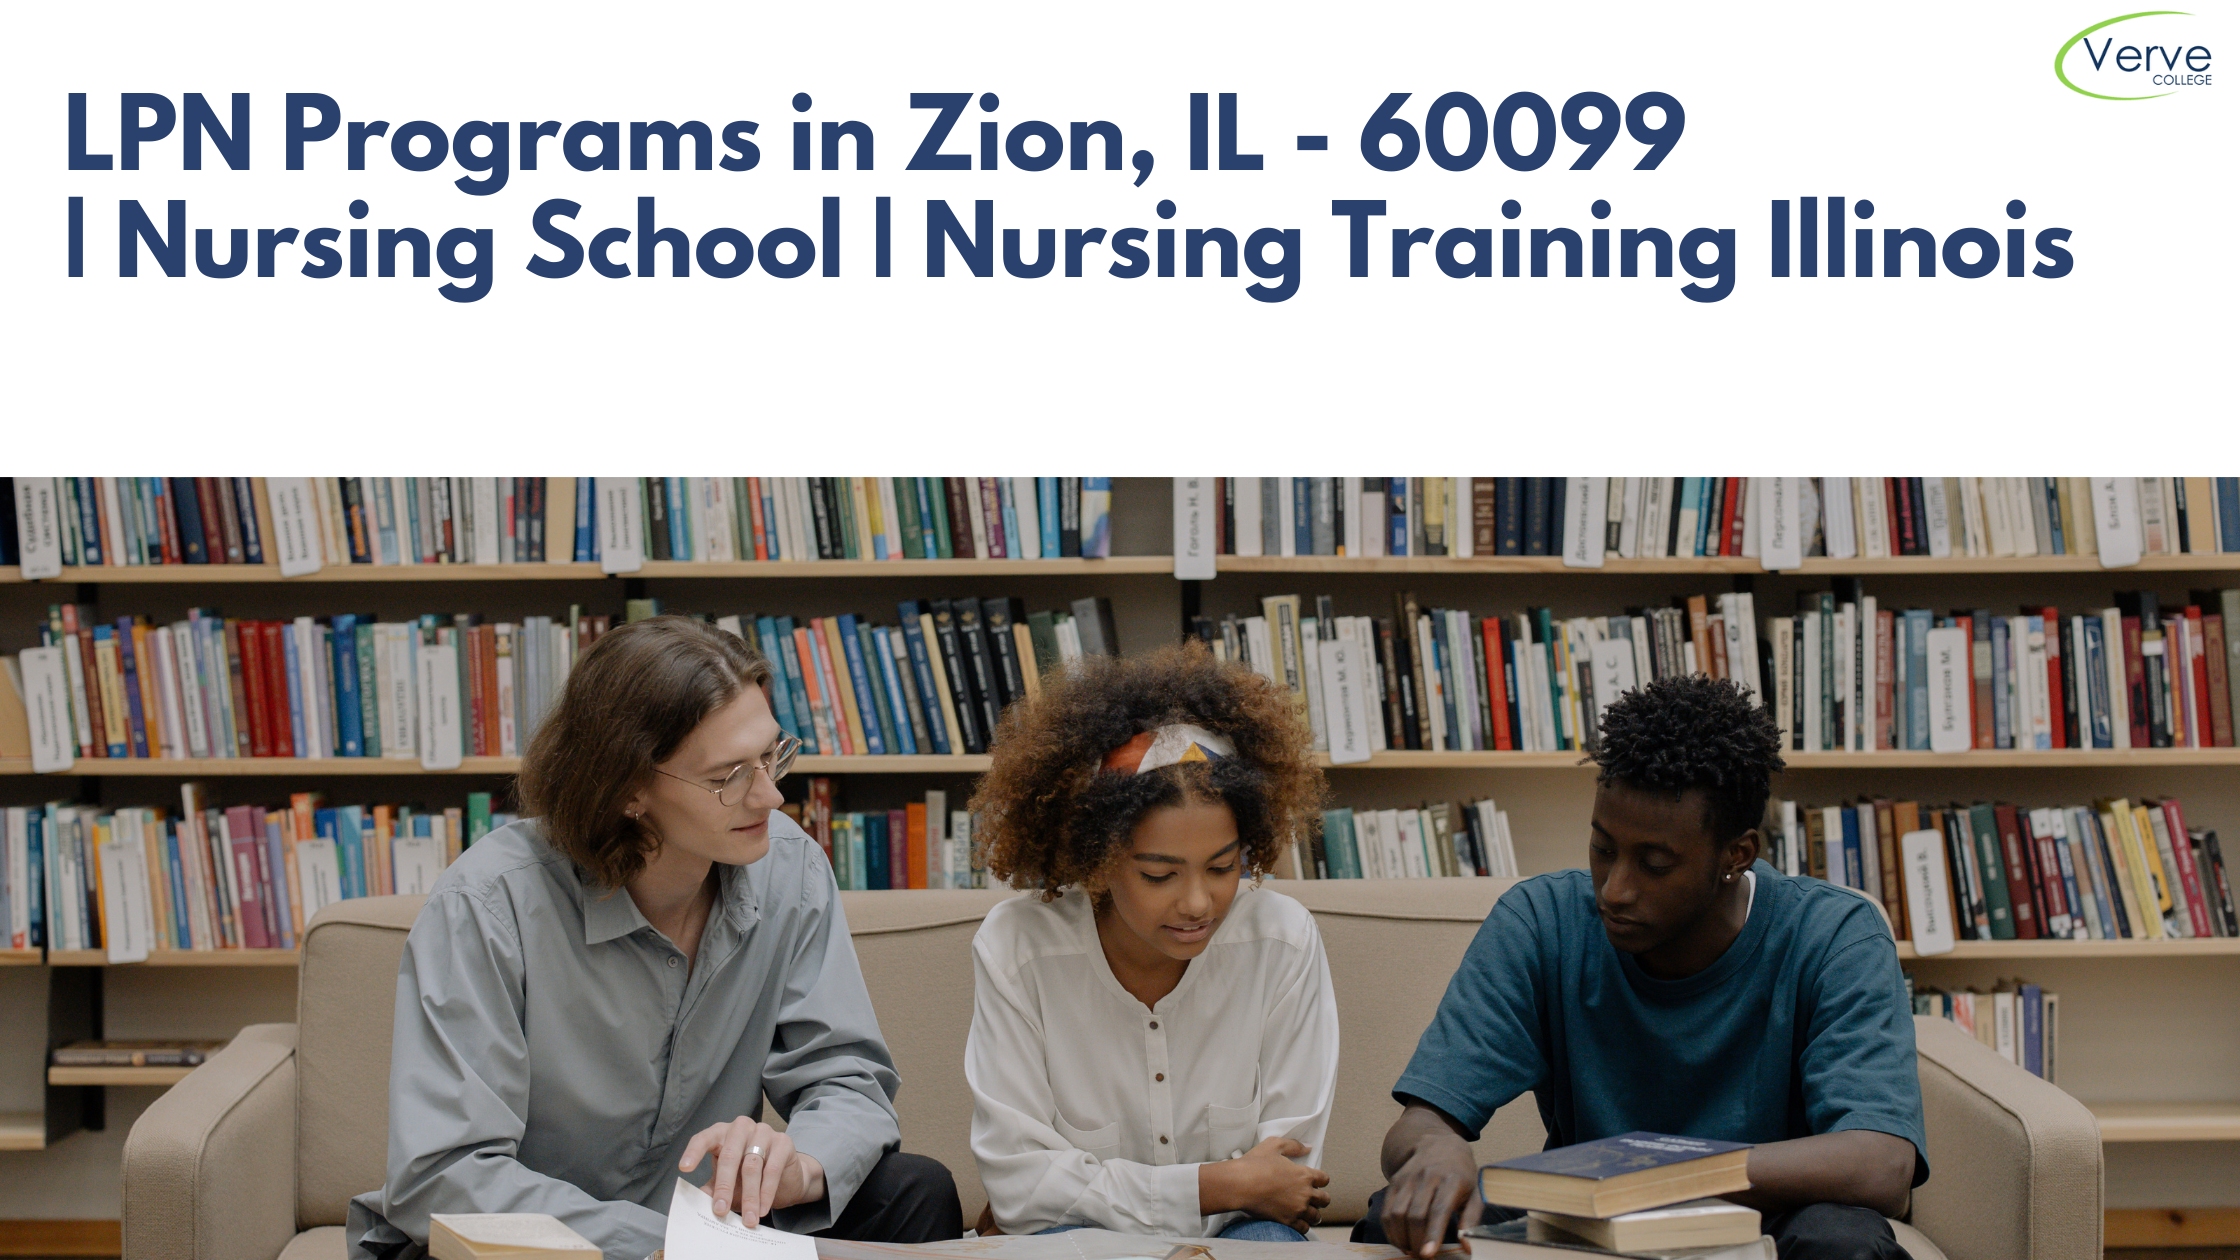 LPN Programs in Zion, IL – 60099 | Nursing School | Nursing Training Illinois